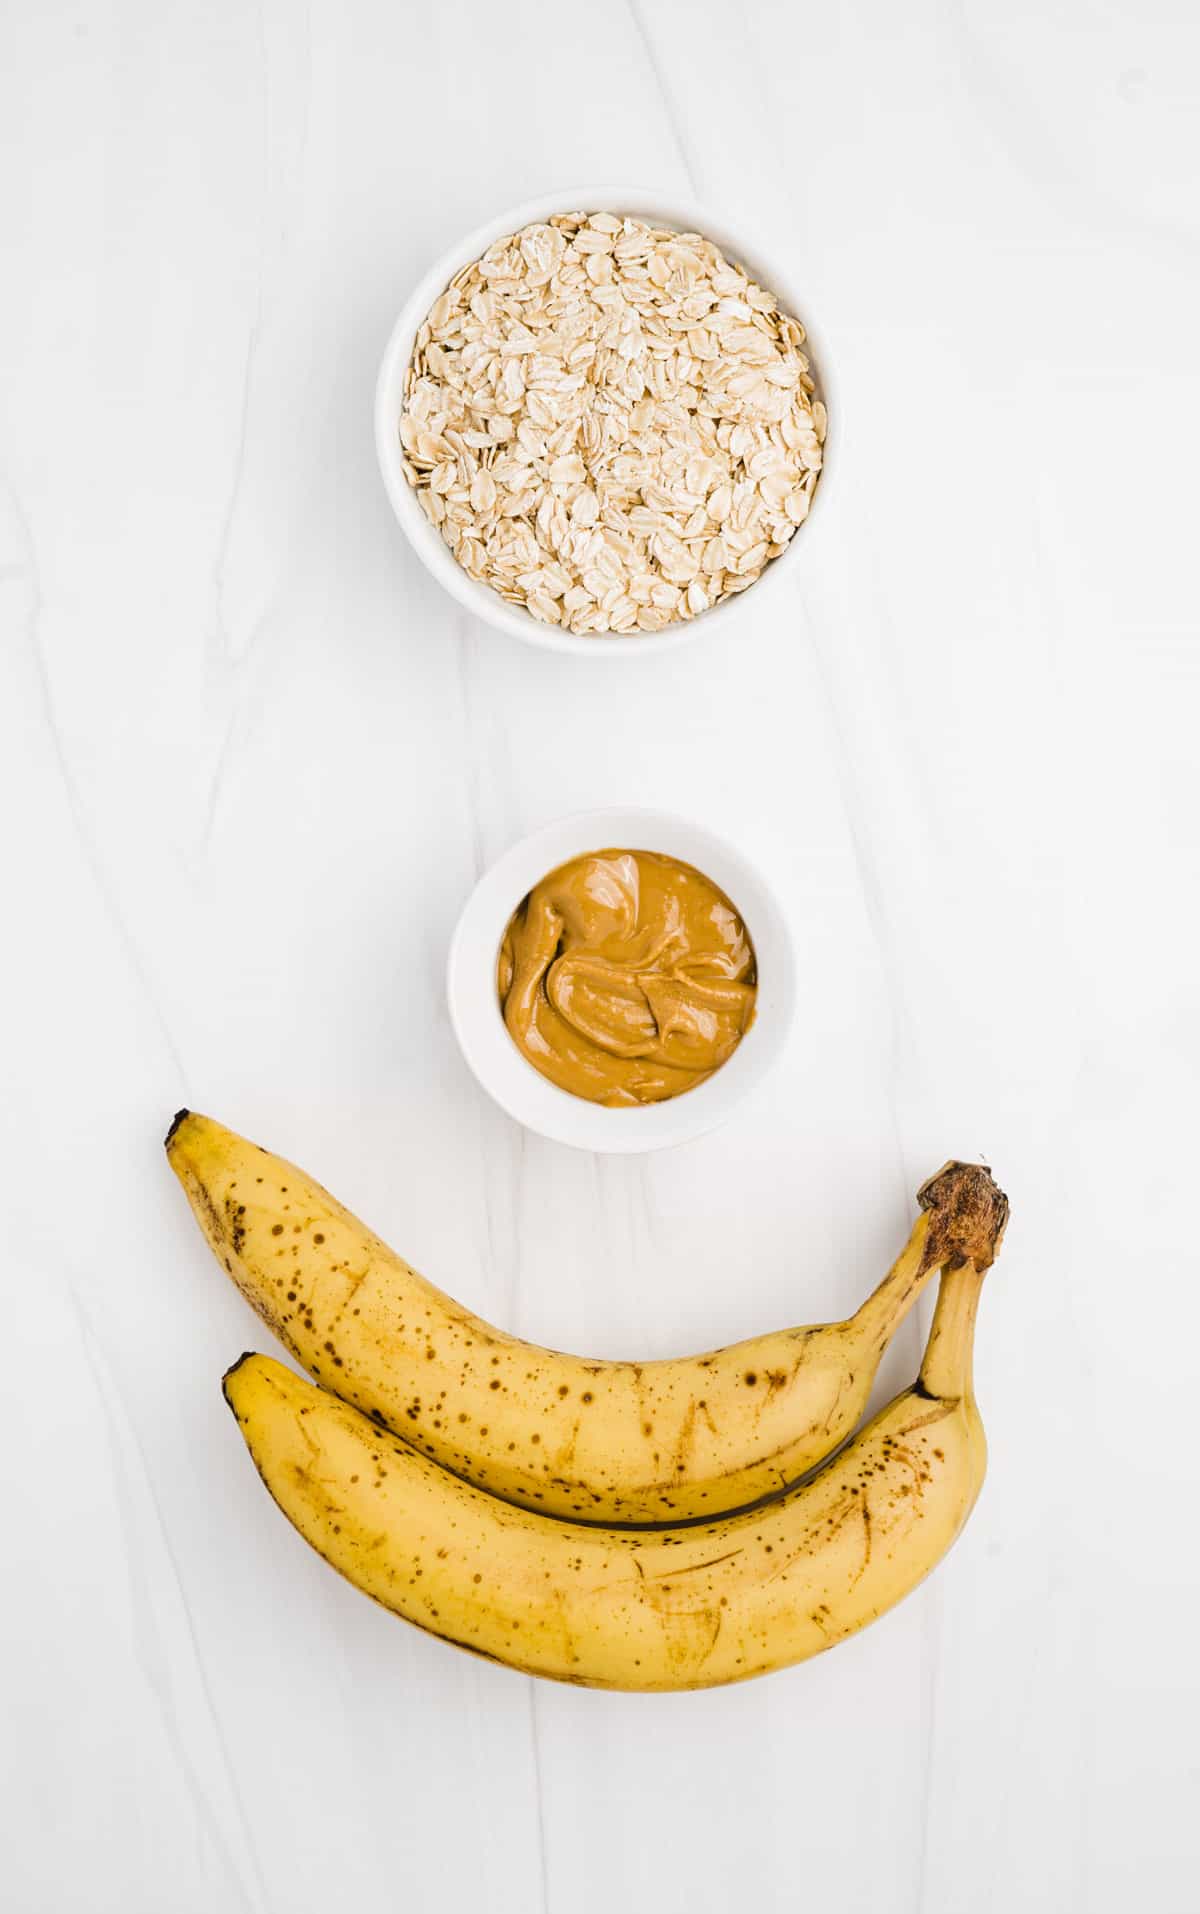 3-ingredient banana oatmeal breakfast cookies ingredients